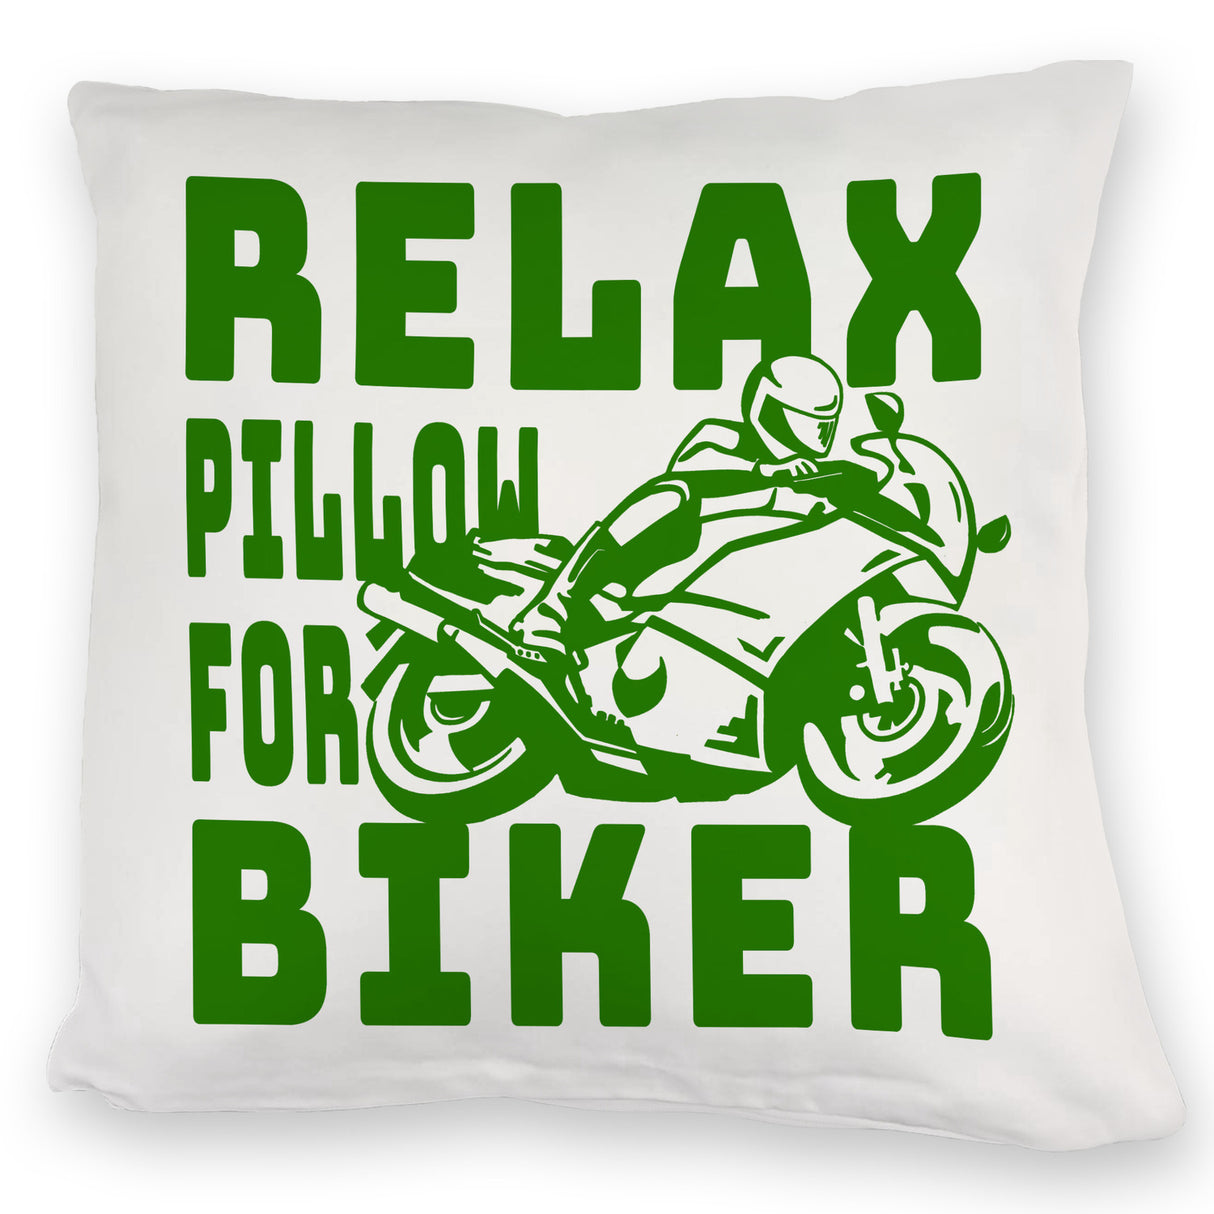 Relax Biker Kissen mit Motorradfahrer Motiv